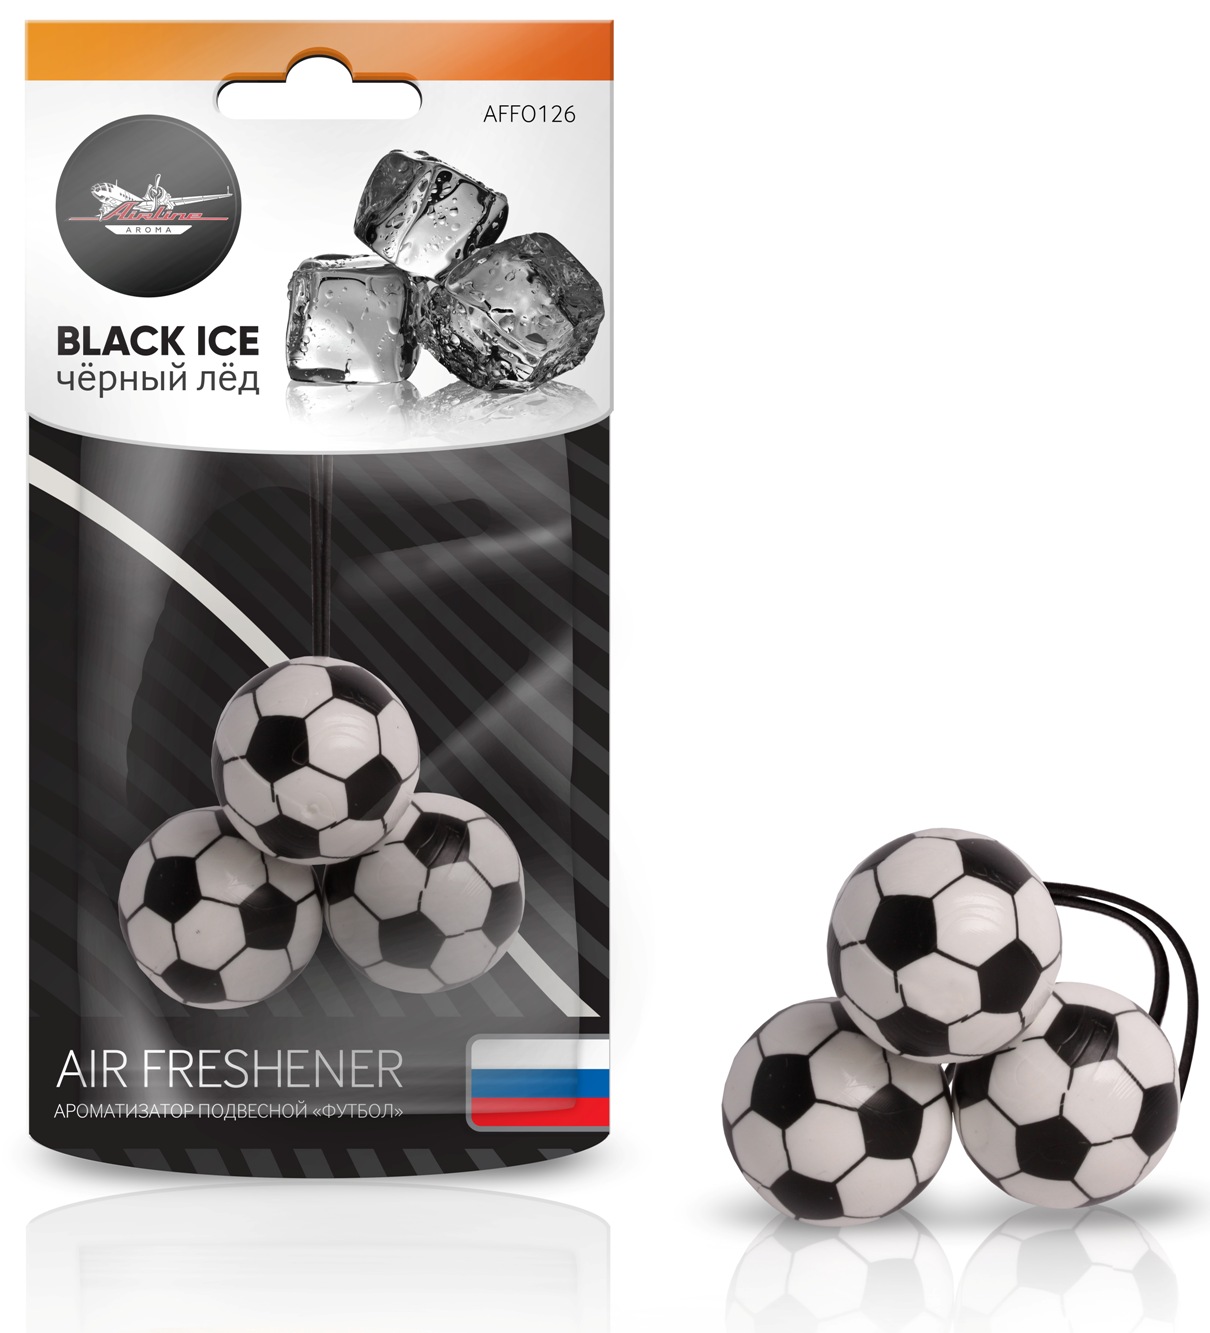 Ароматизатор подвесной "Футбол" черный лед (AFFO126)